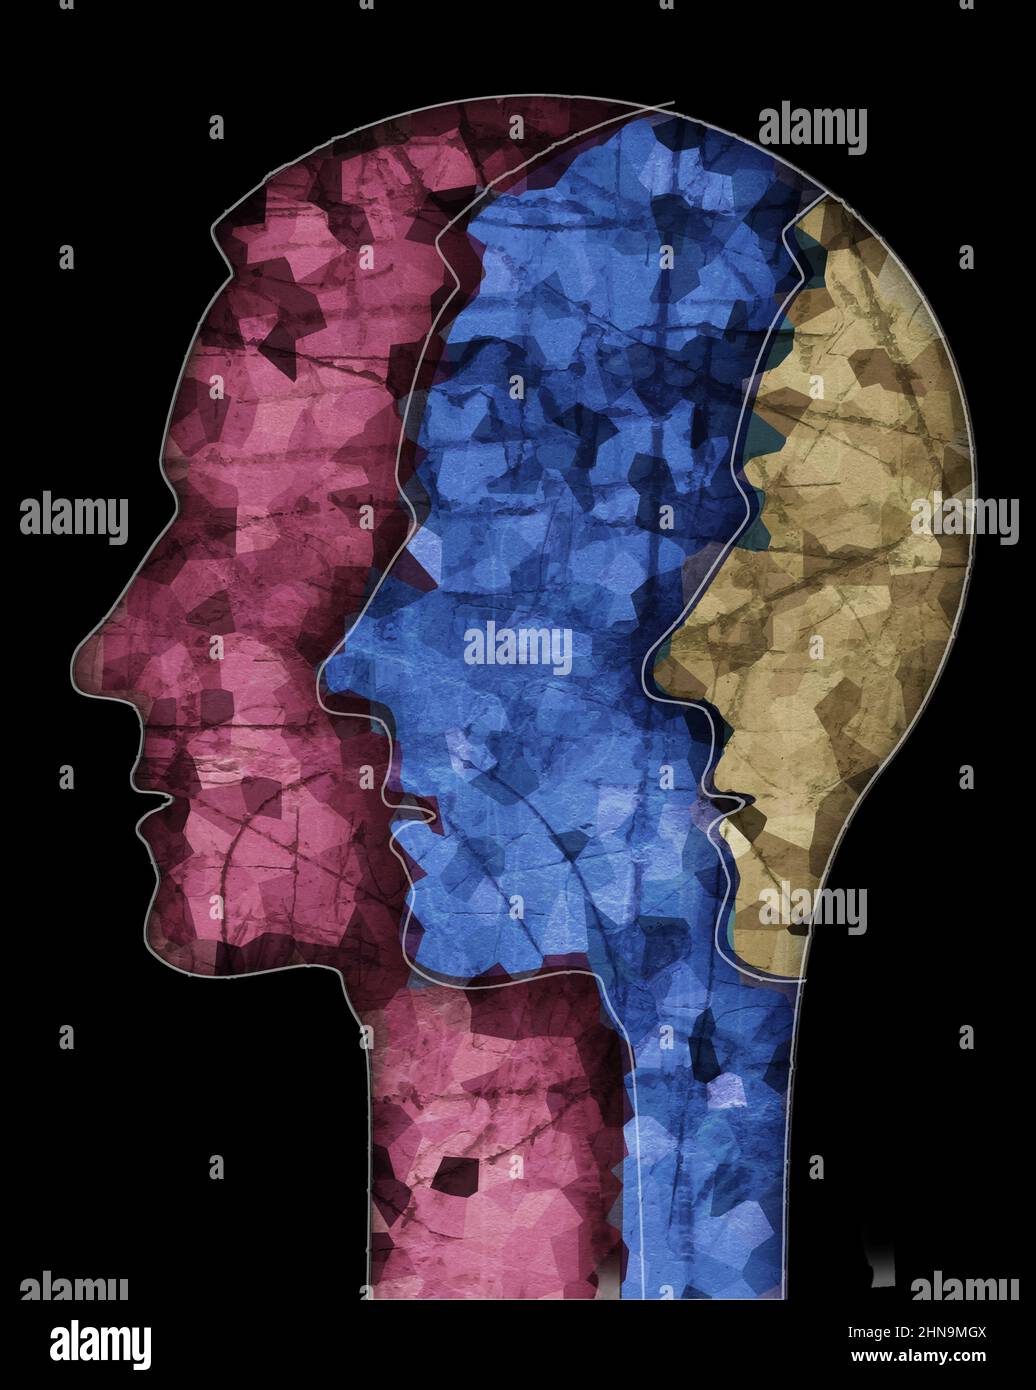 Schizophrenie männlichen Kopf Silhouette. Illustration mit drei stilisierten männlichen Köpfen auf Grunge-Textur, die Schizophrenie-Depression, bipolare Diso symbolisiert Stockfoto